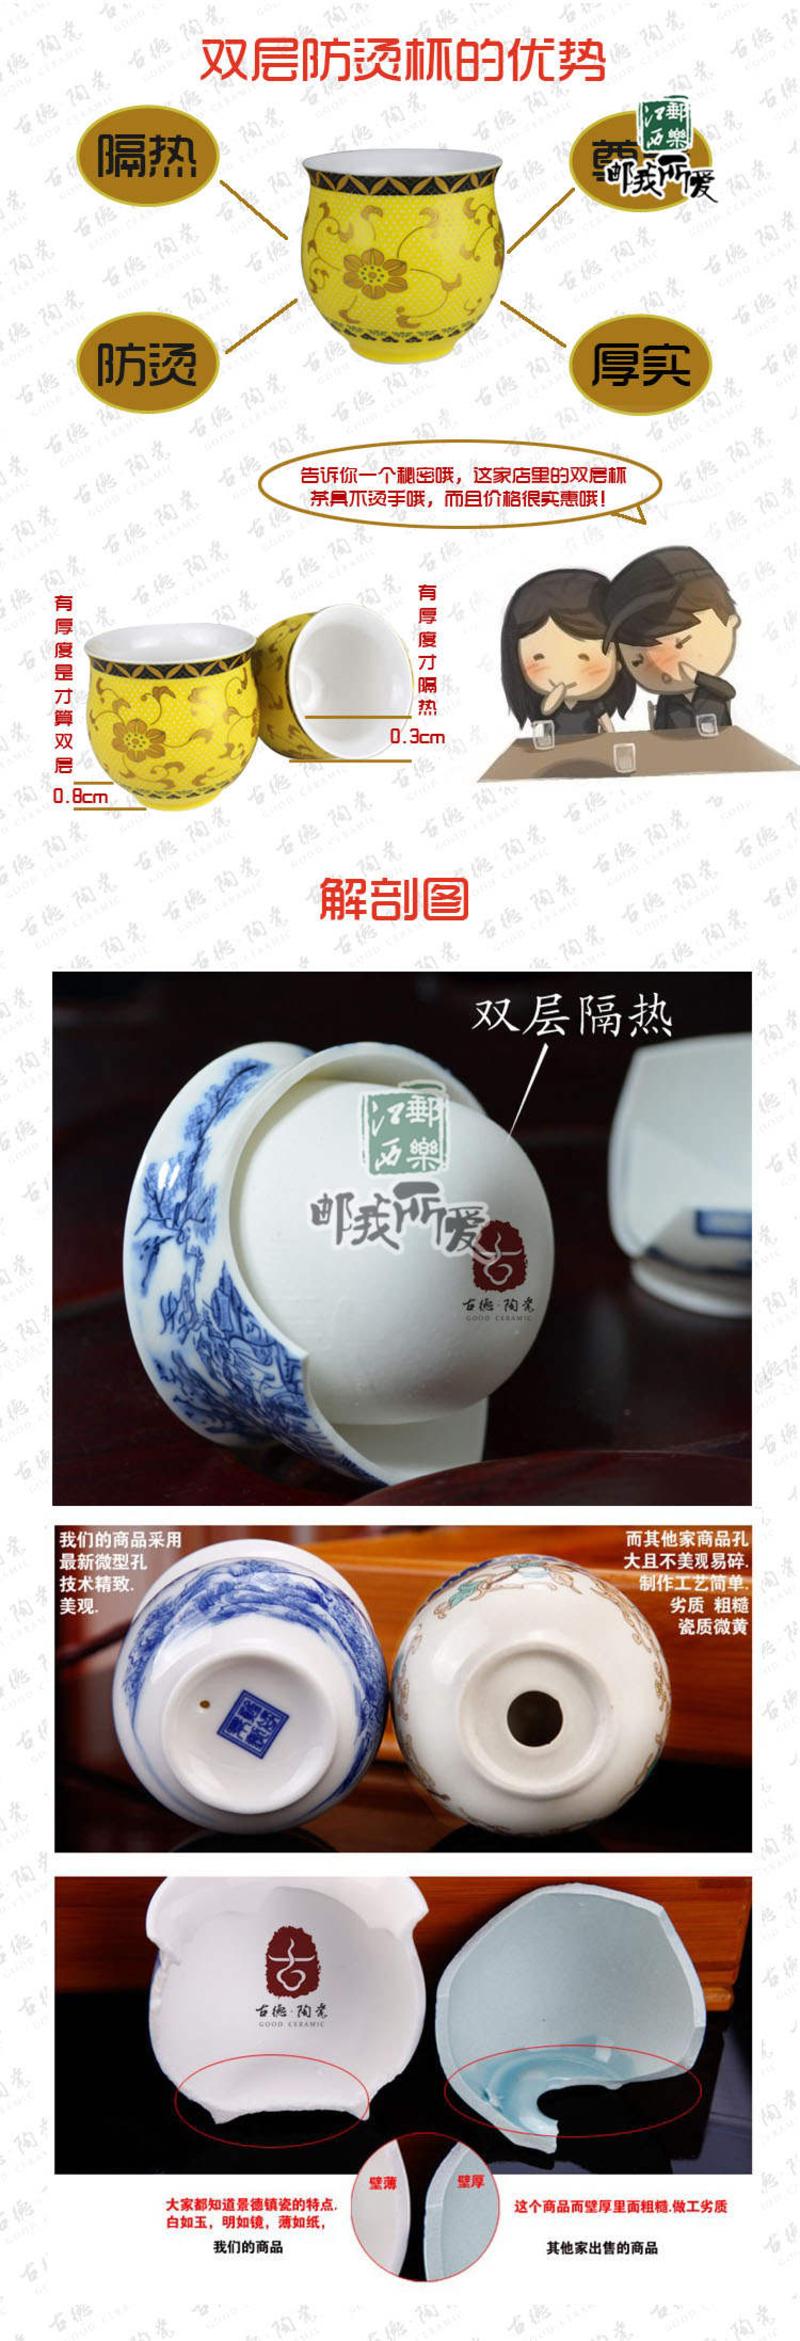 【景邮陶瓷】景德镇陶瓷茶具套装 大茶盘茶具 双层杯防烫设计 带茶海 红金龙